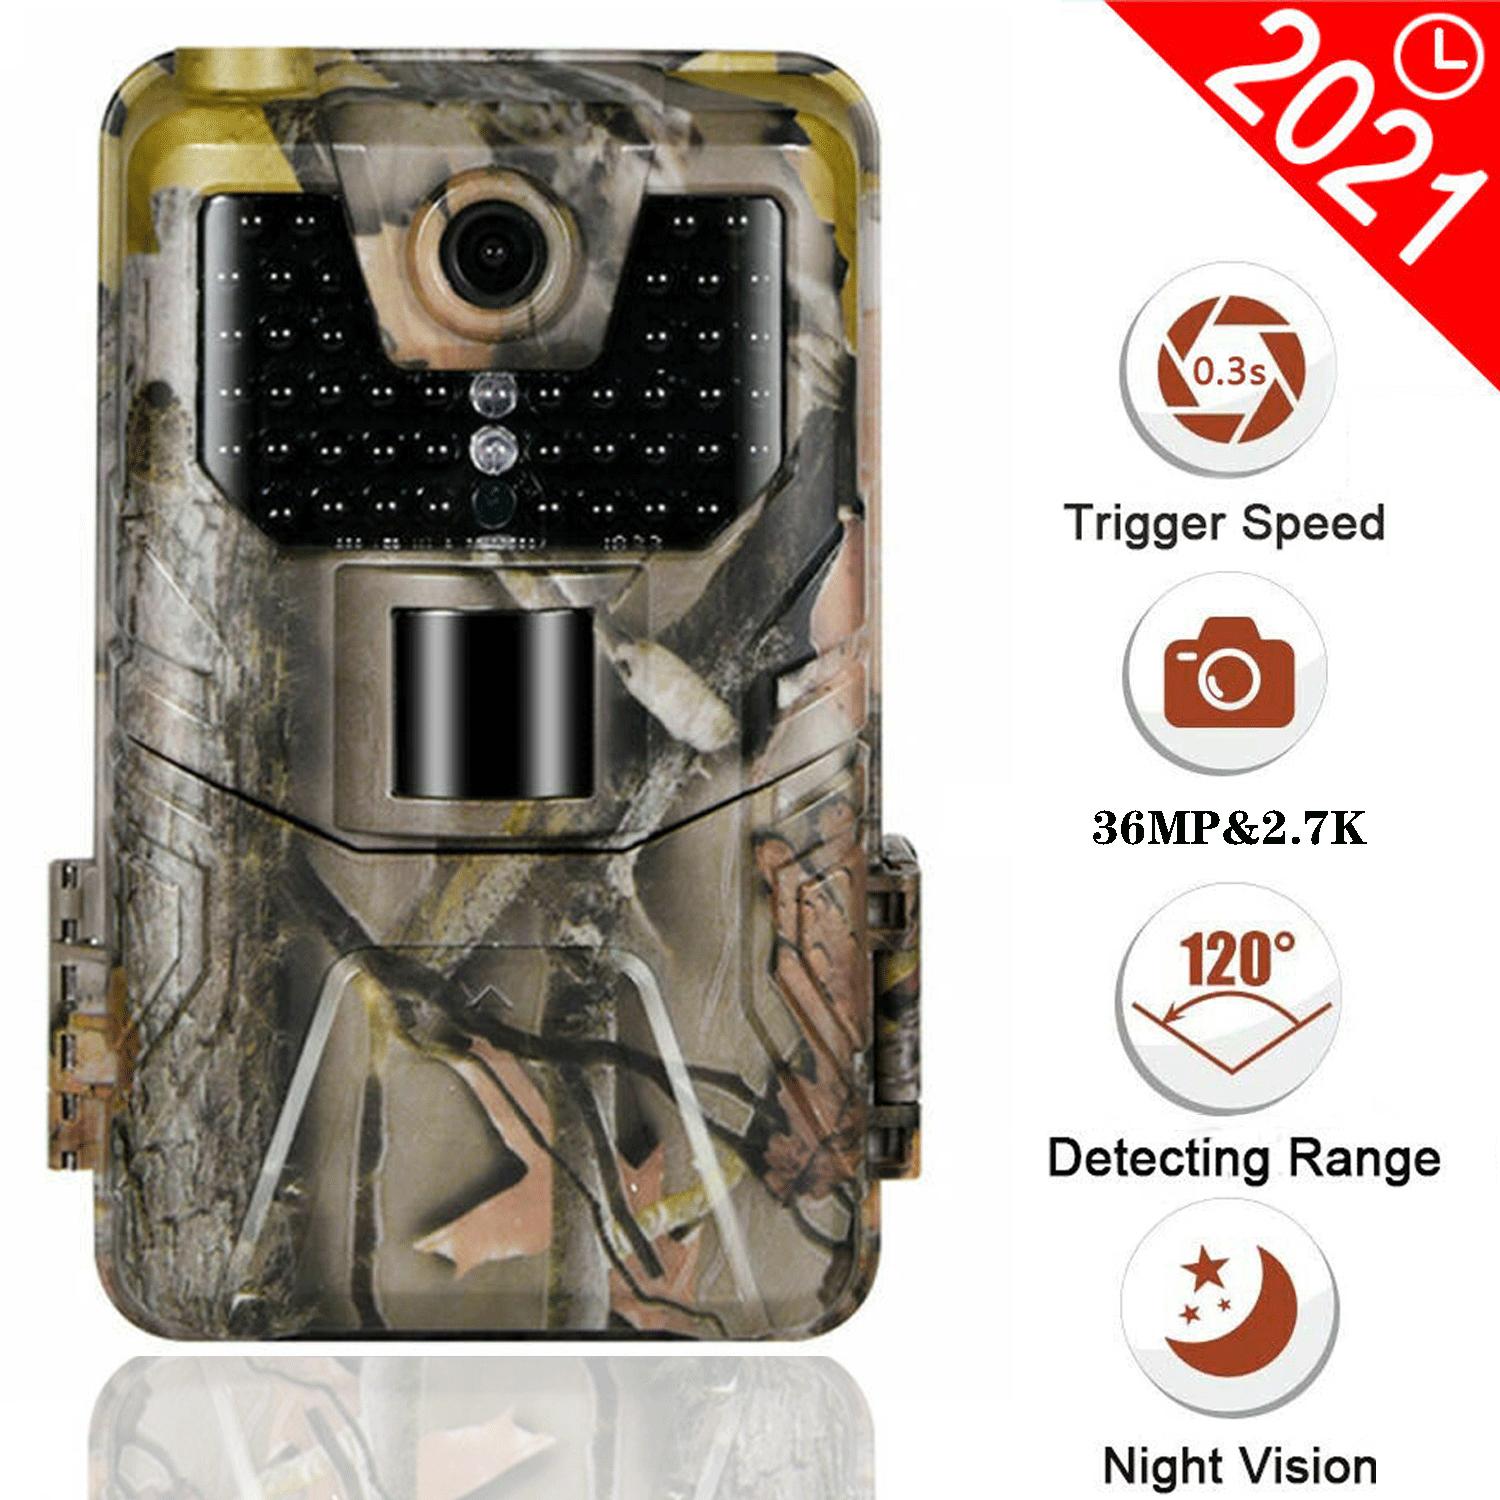 Изображение товара: Камера видеонаблюдения Suntekcam HC900A, водонепроницаемая камера для охоты, 36 МП, 2,7 K, ночное видение, класс защиты IP65